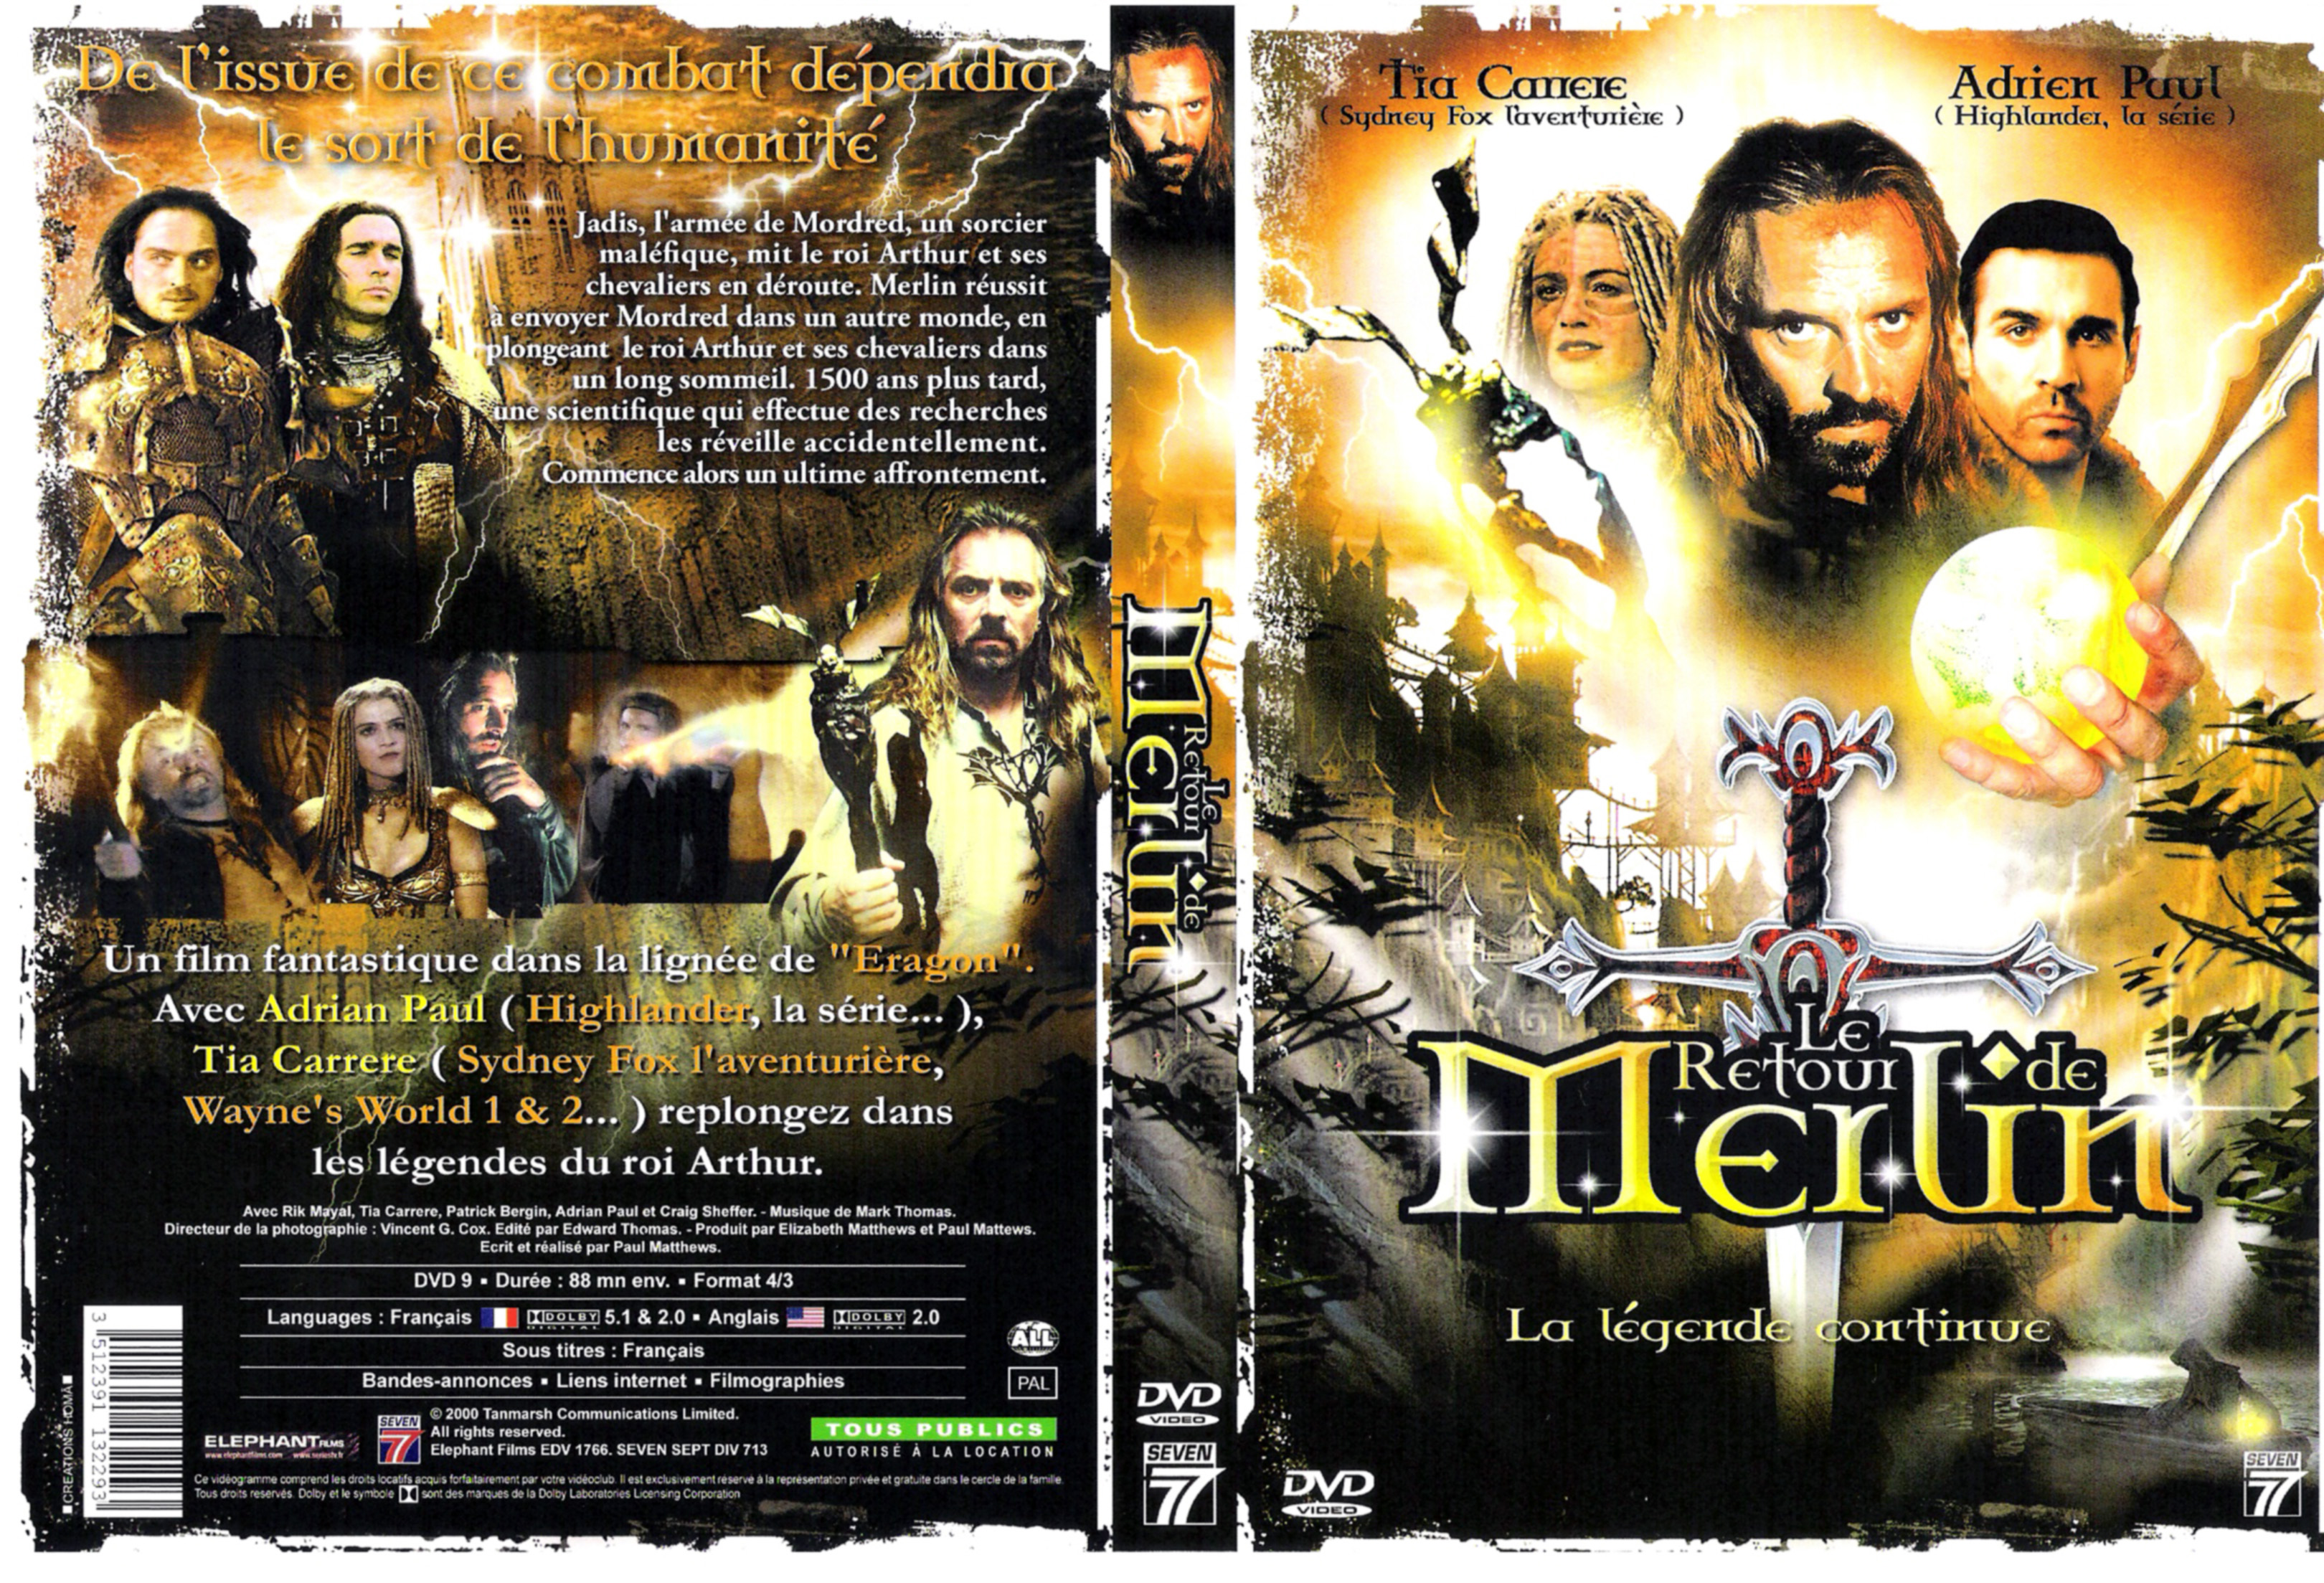 Jaquette DVD Le retour de Merlin